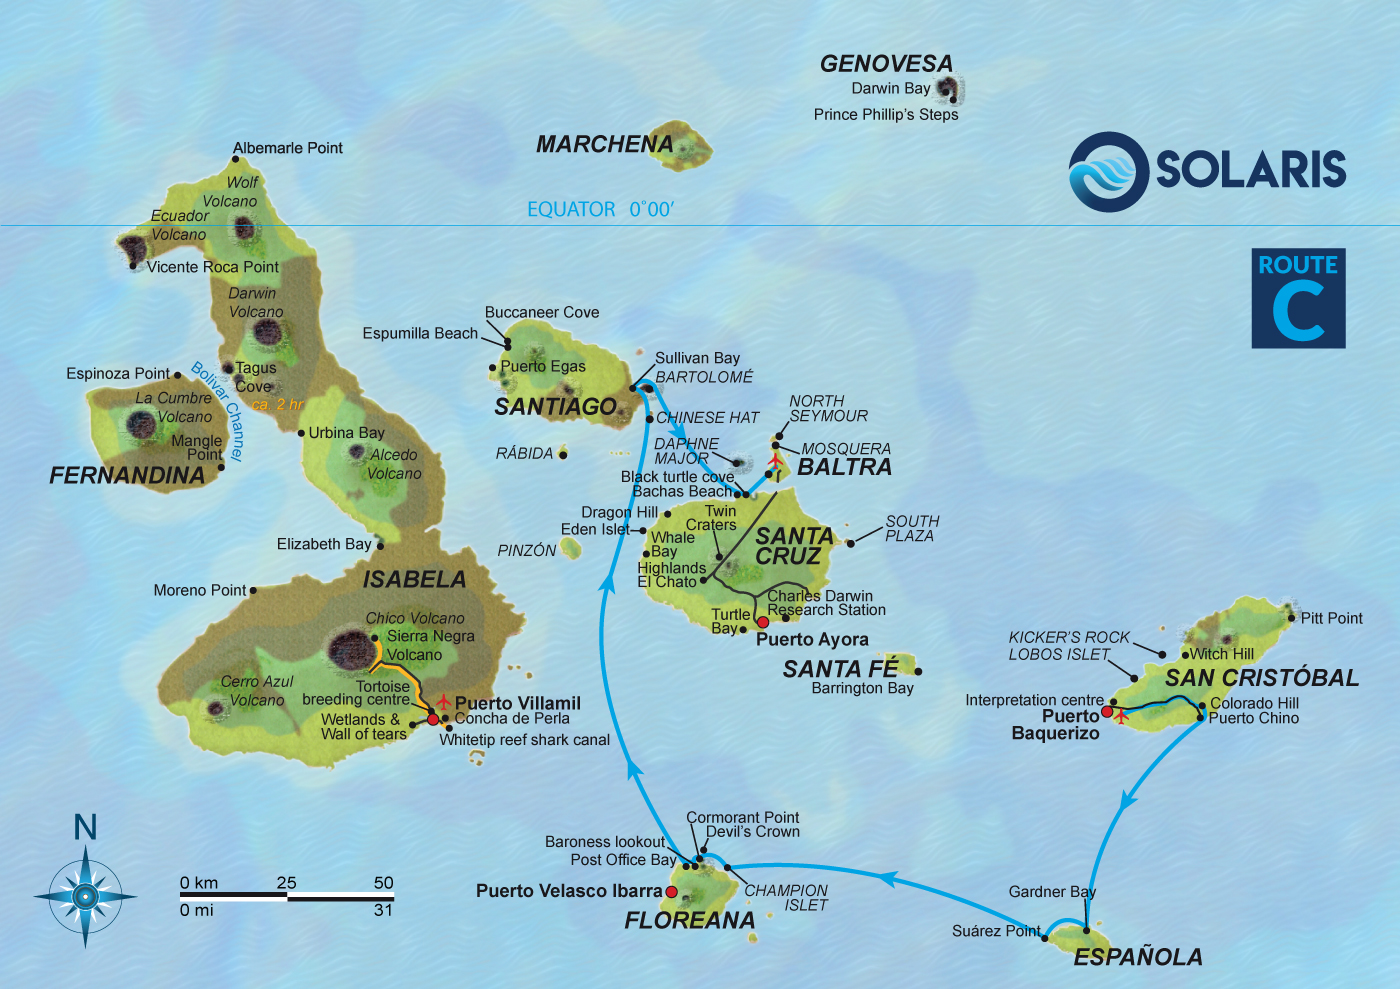 solaris-yacht-galapagos-islands-cruises-first-class-san-cristobal